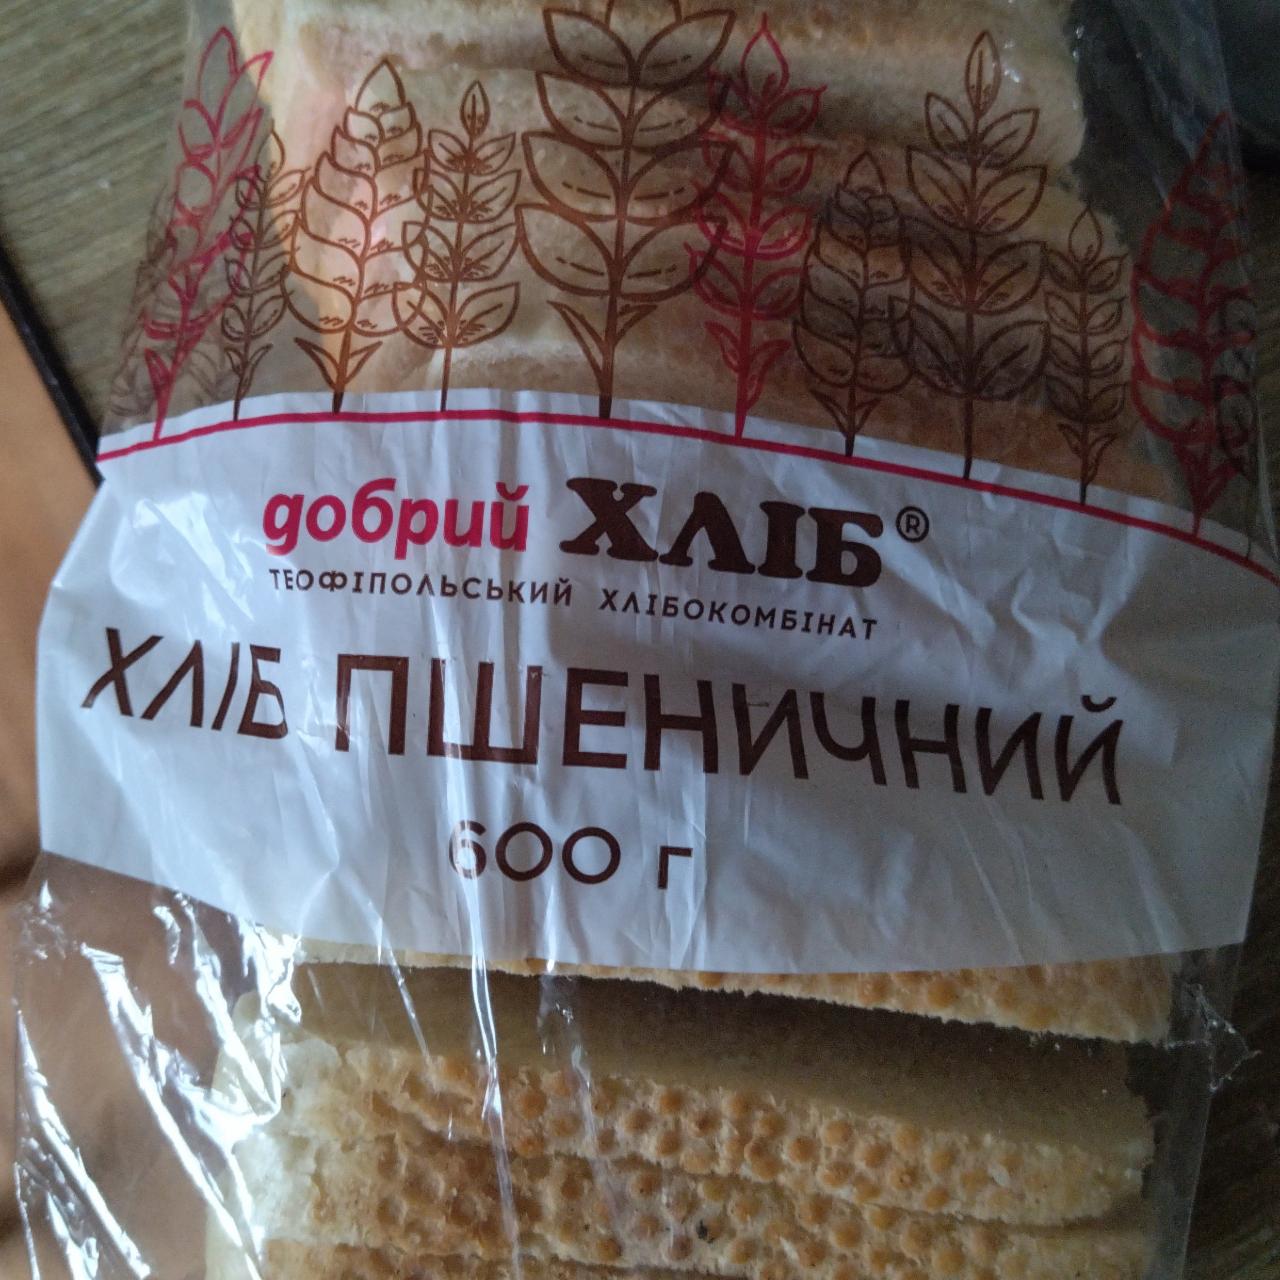 Фото - Хлеб пшеничный Добрый хлеб Теофипольский хлебокомбинат